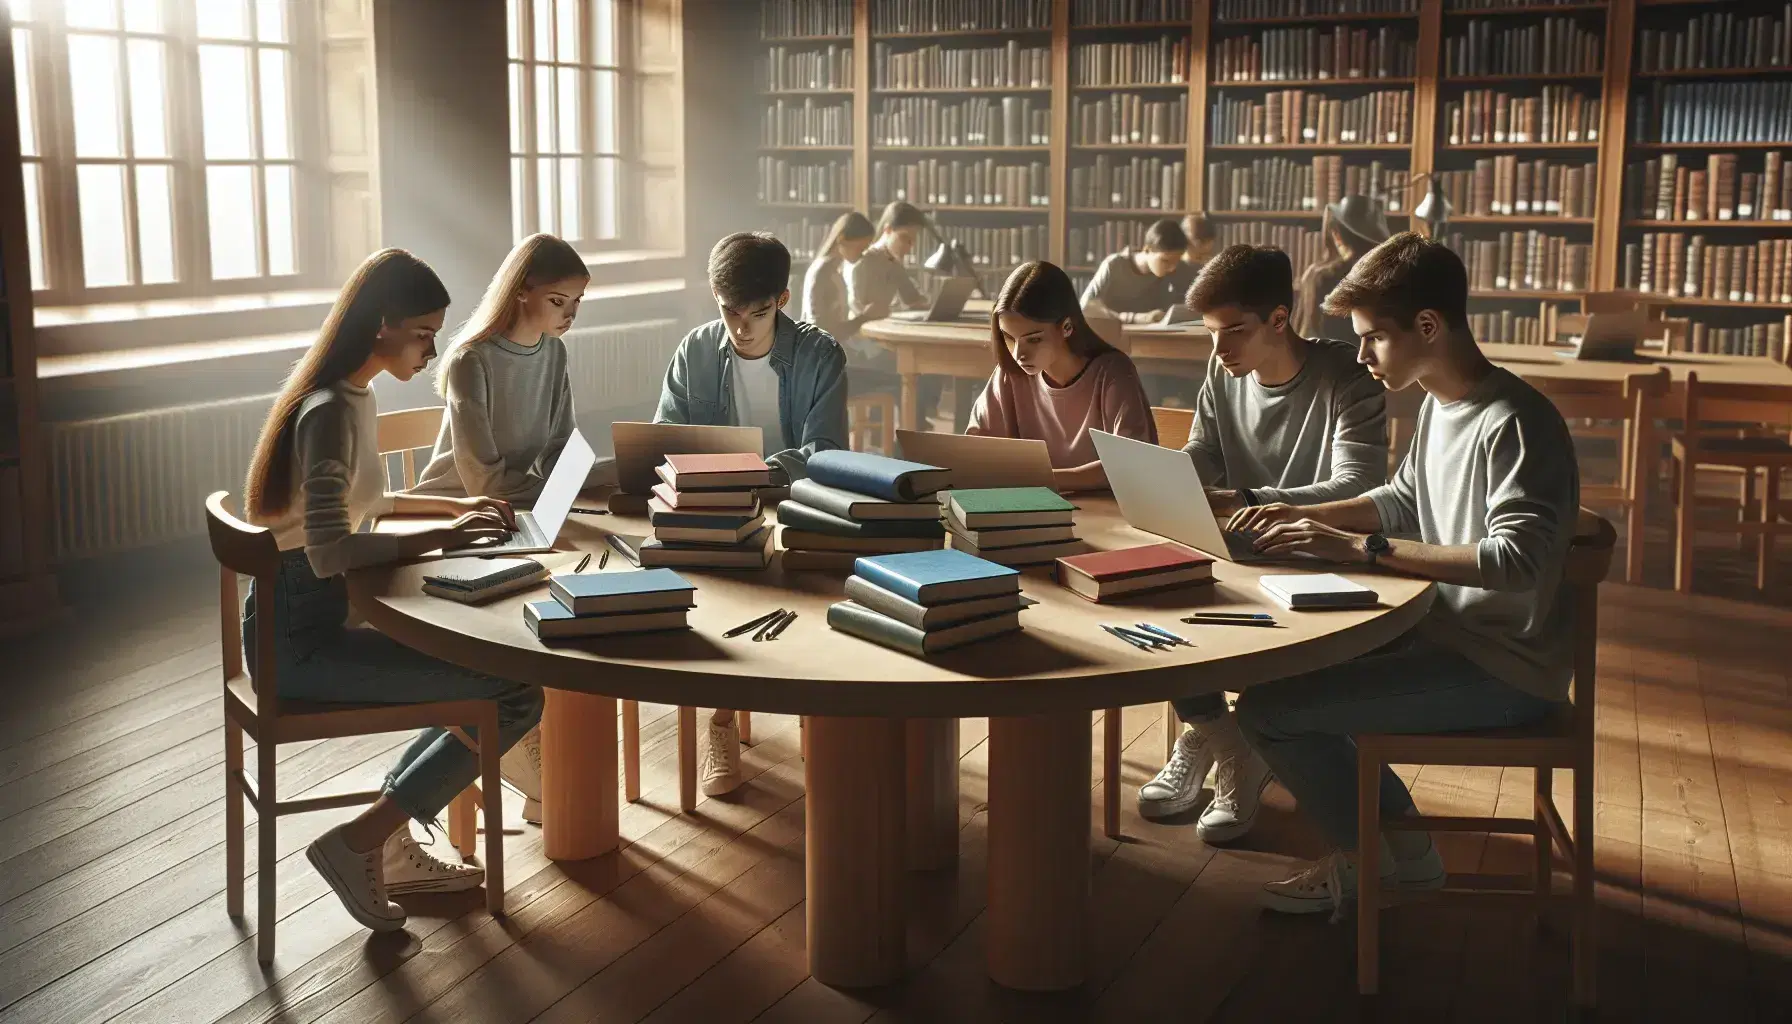 Cinco estudiantes universitarios estudian en una biblioteca, rodeados de libros y usando laptops, bajo la luz natural de una ventana.